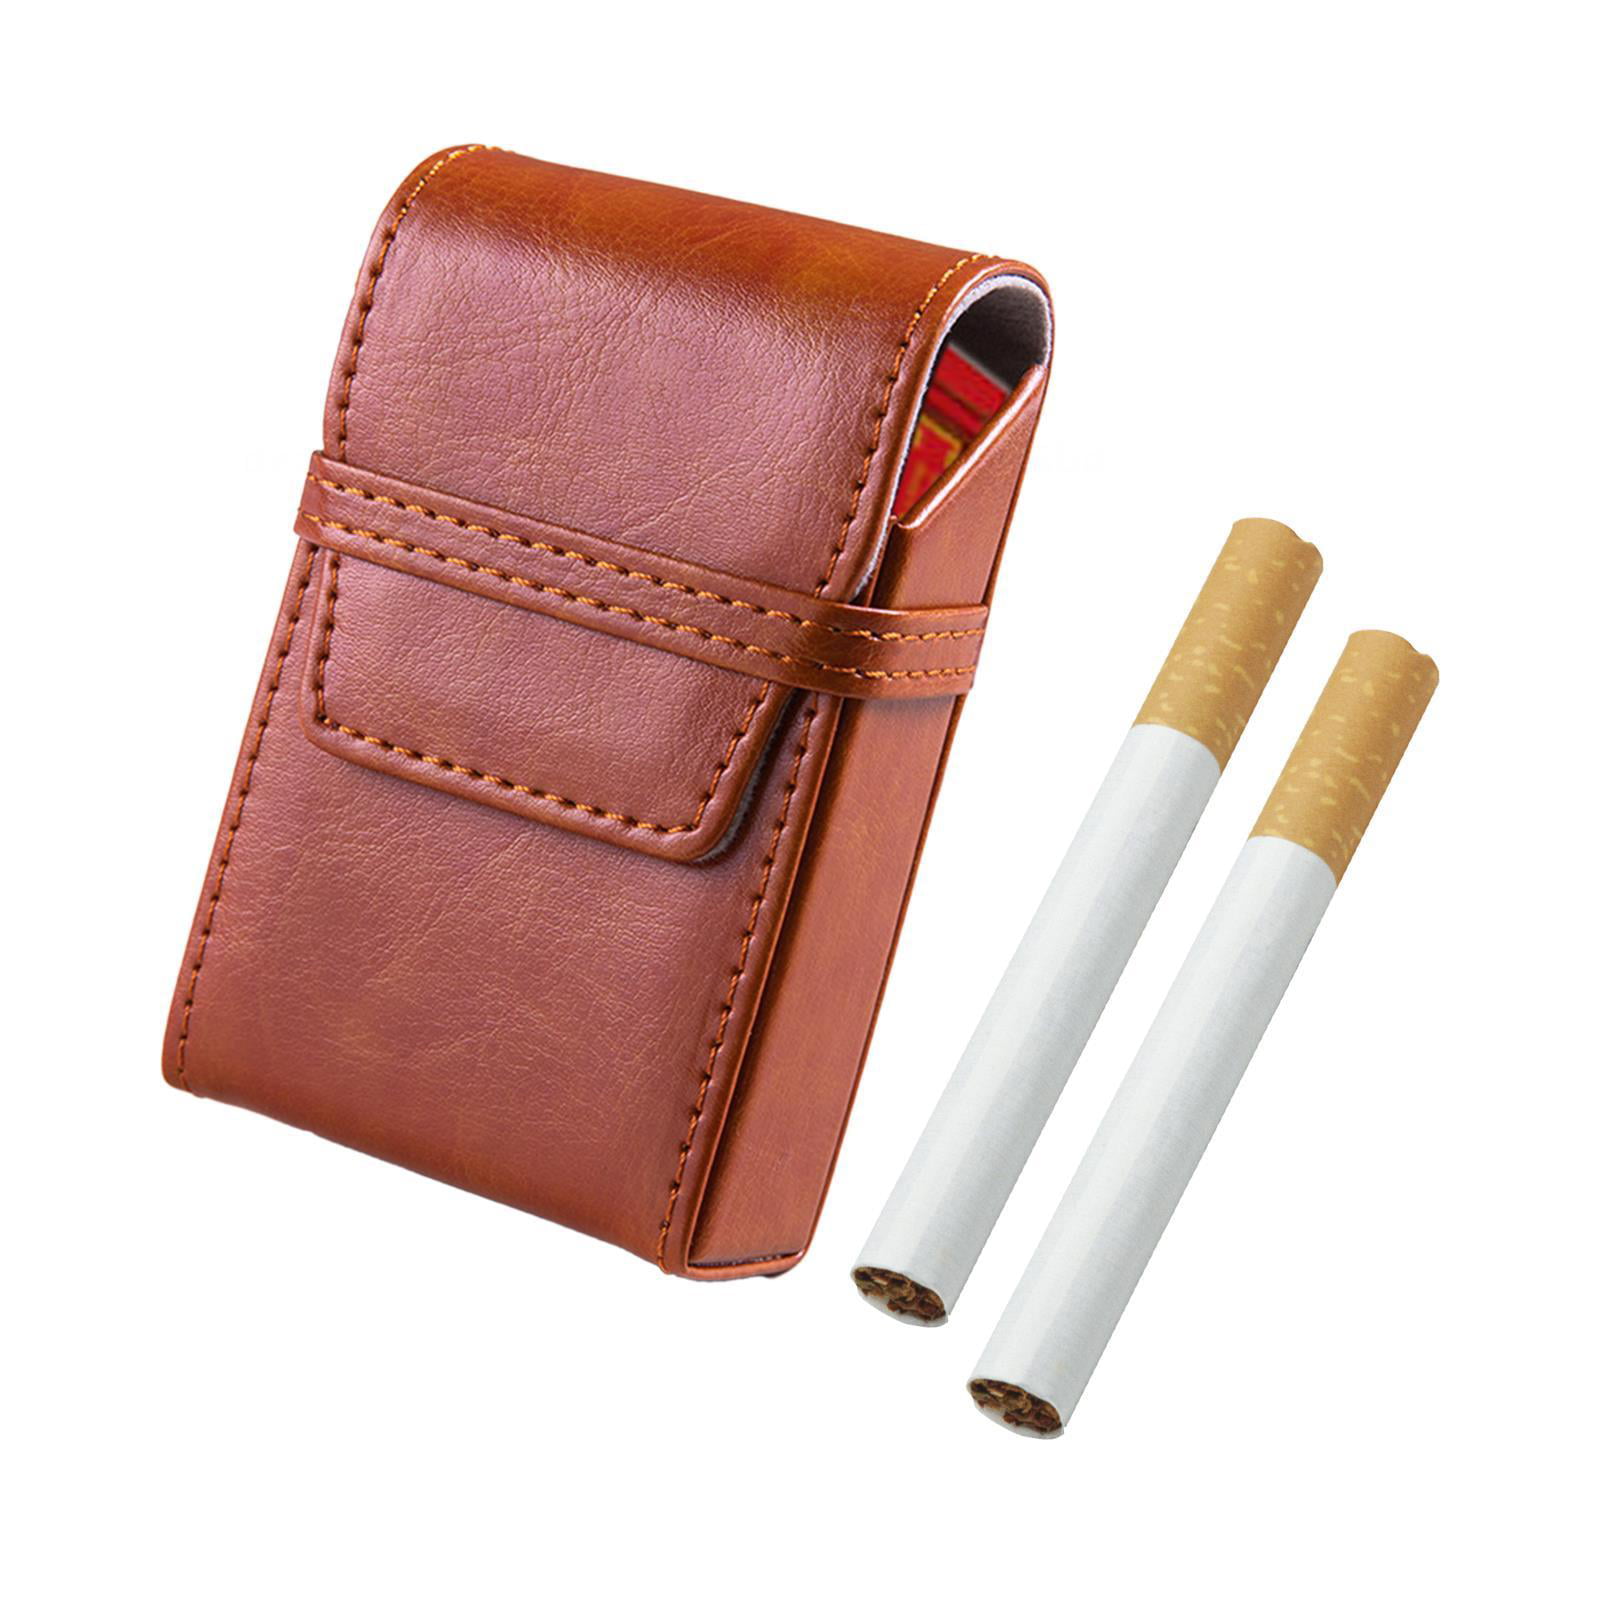 Kaesi Cigarette Storage Box Sturdy Construction Wear Resistant Faux Leather Men's Cigarette Case Metal Clip Cigarette Box for Home, Adult Unisex, Size